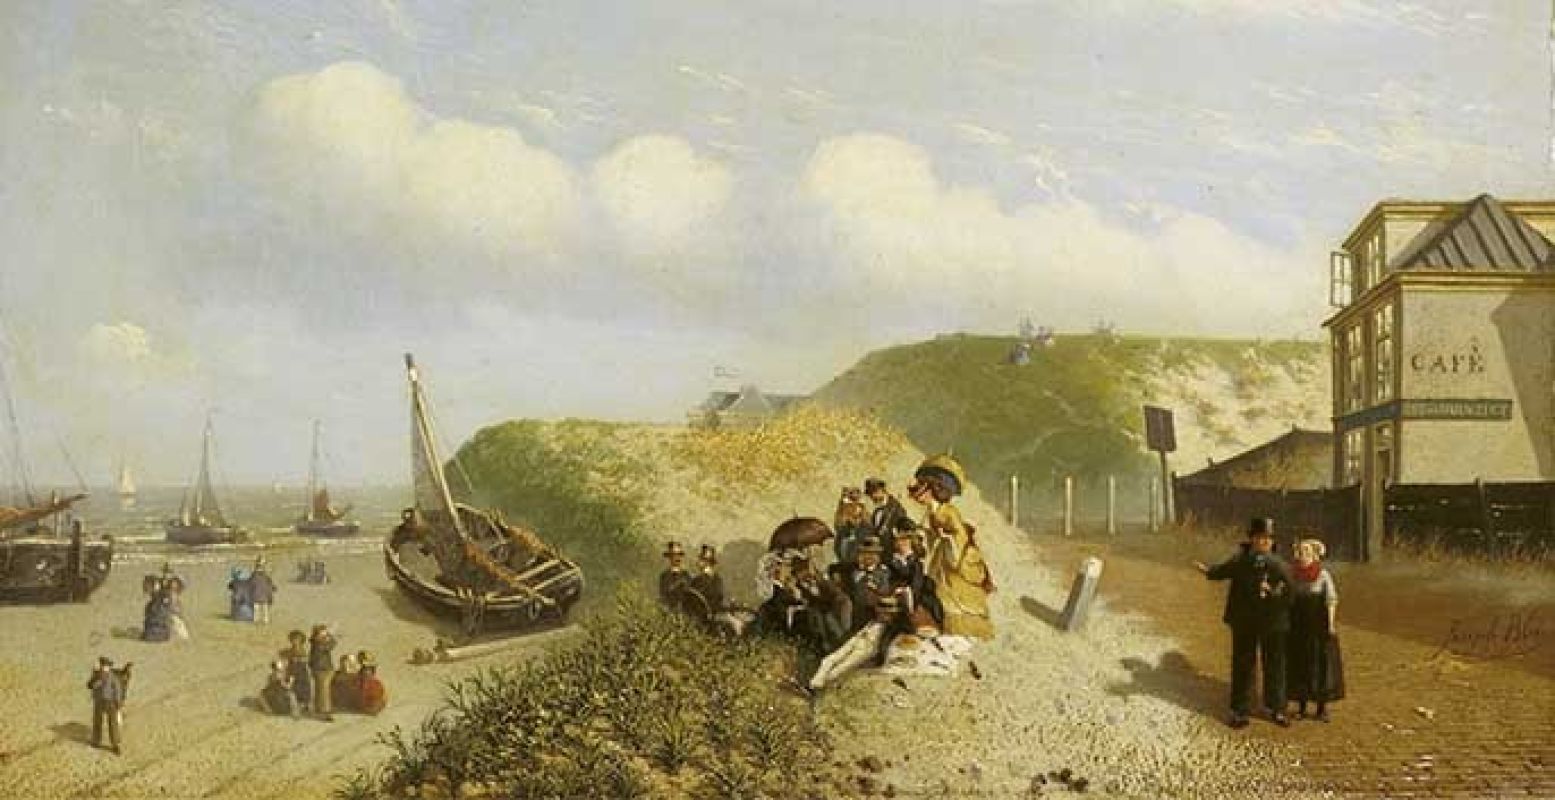 Beeld: Joseph Bles, gezicht op café, zee en duinzicht te Scheveningen; circa 1870. Collectie Haags Historisch Museum